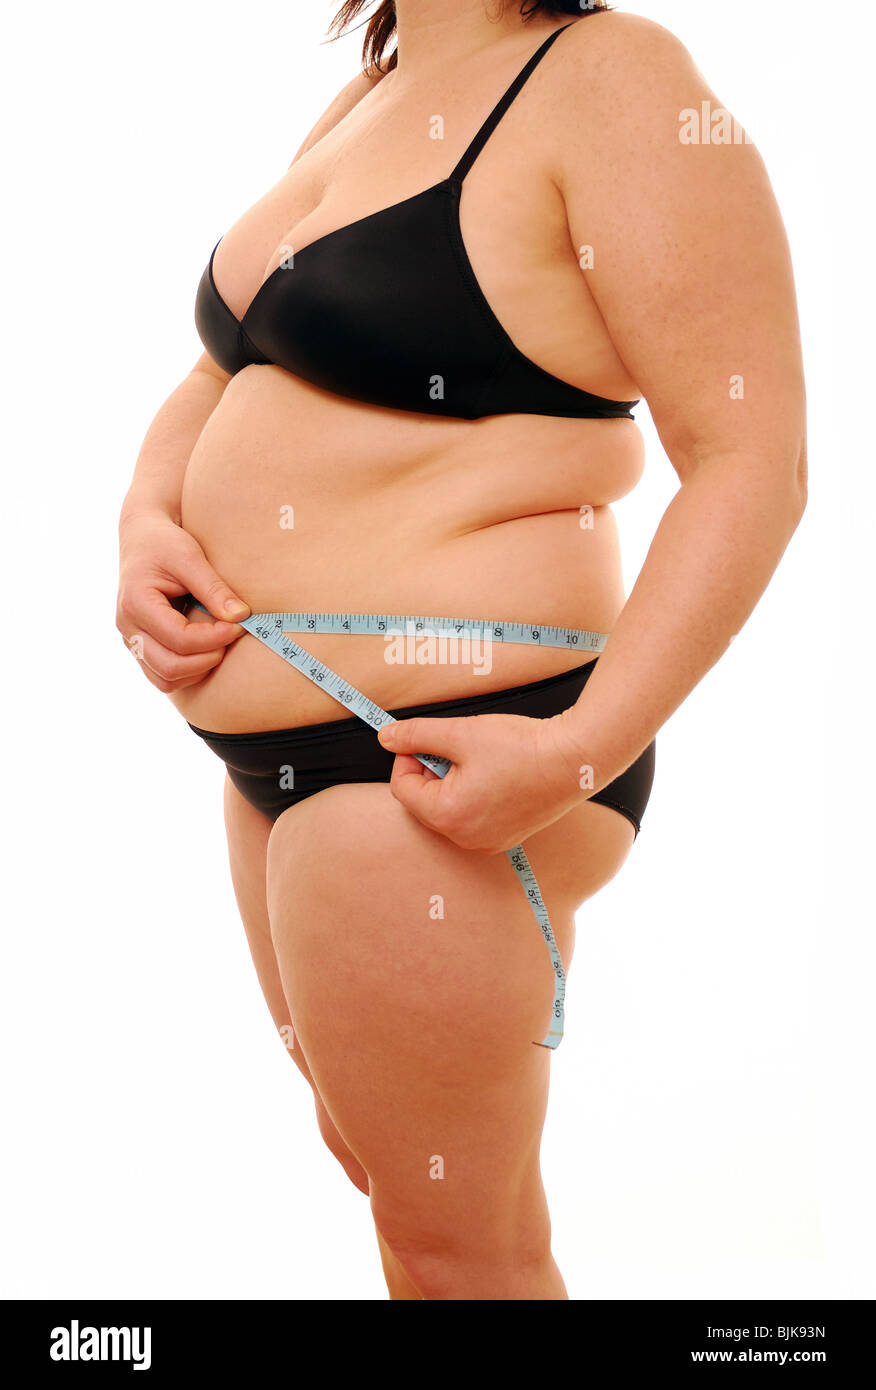 Übergewichtige frau ihren körper messen stockfotografie alamy